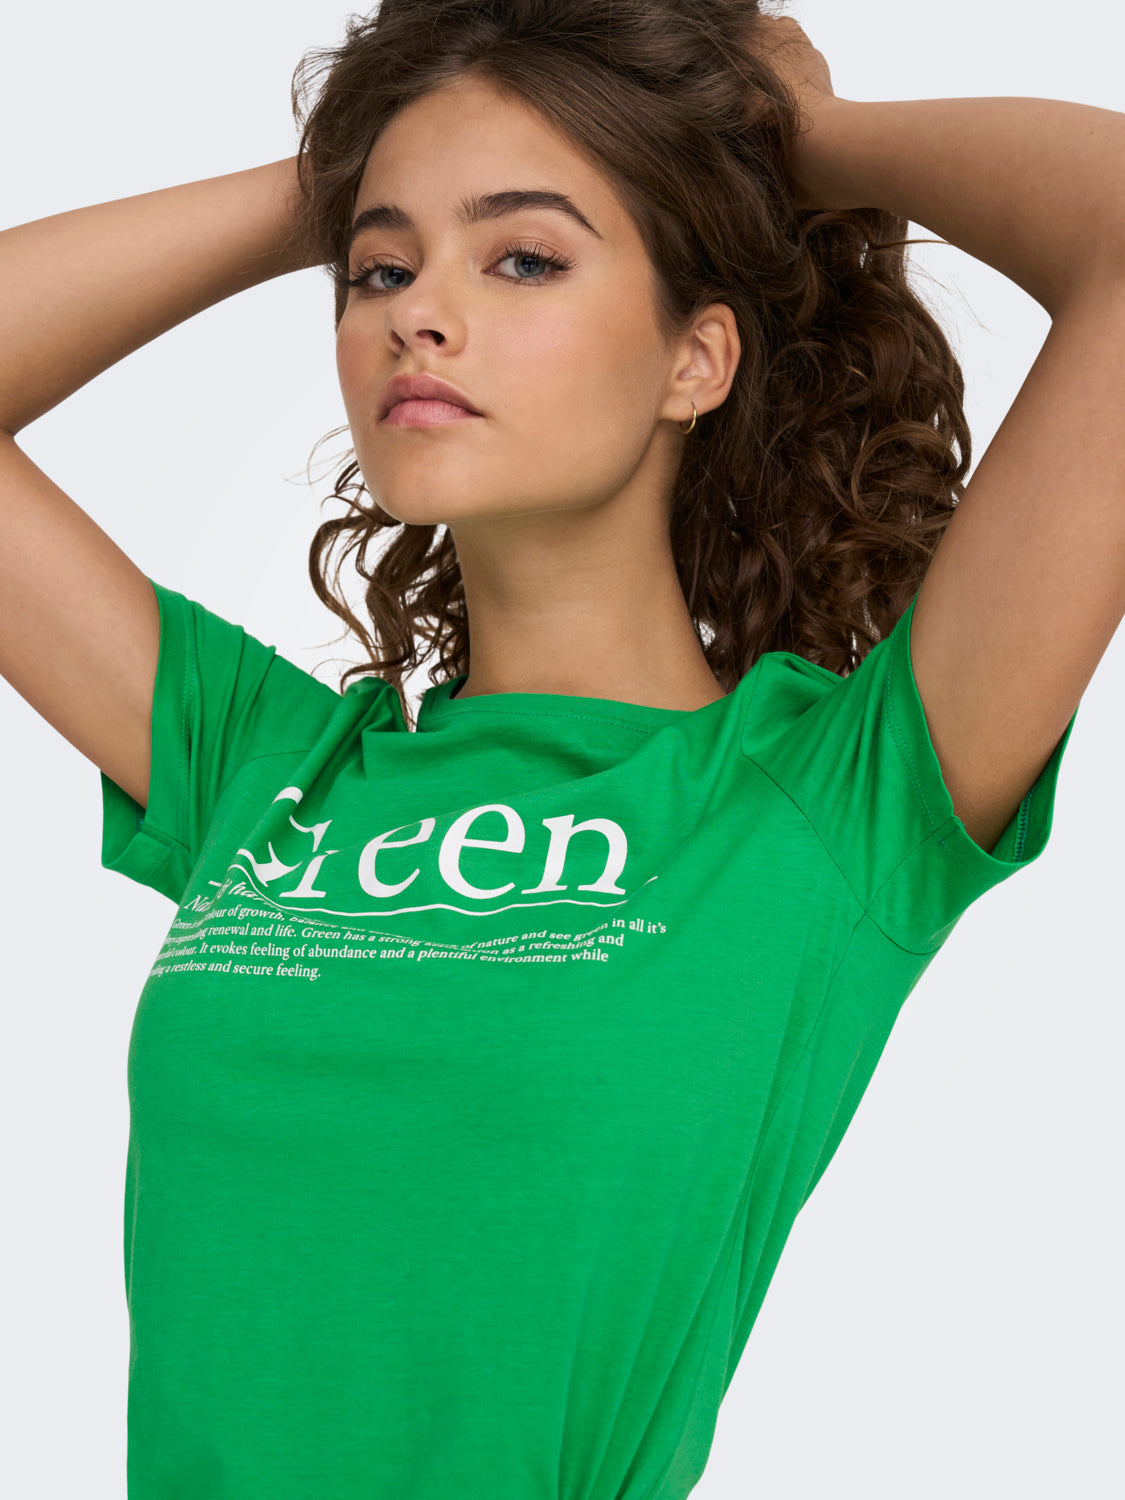 ONLCOLOUR T-Shirt - Kelly Green